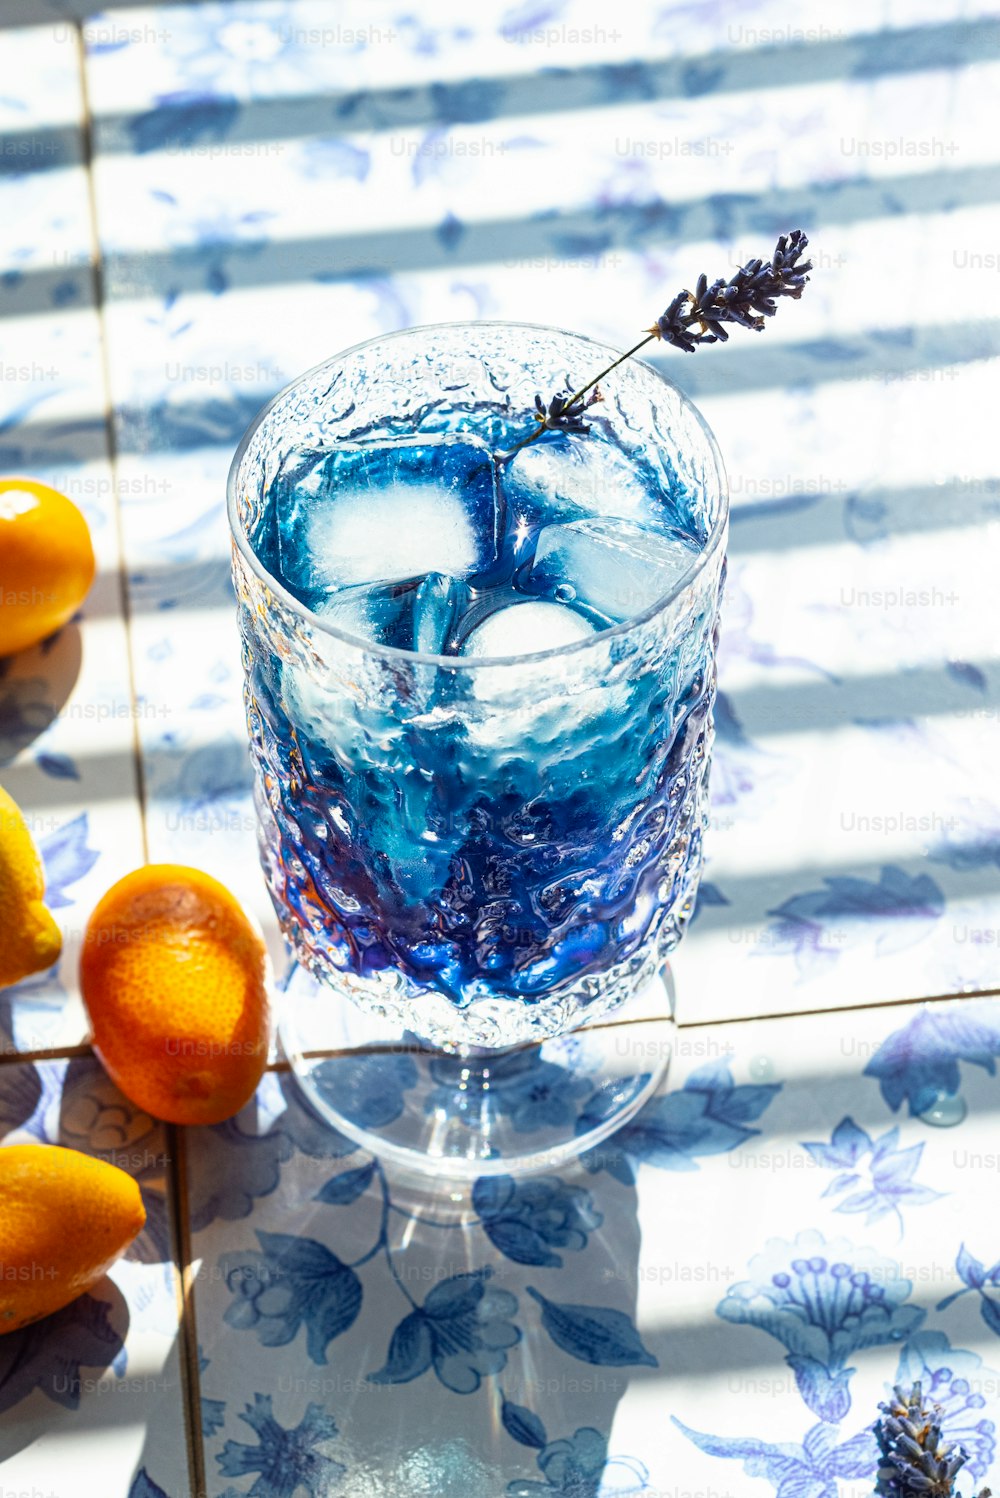 un verre rempli de liquide bleu à côté d’oranges